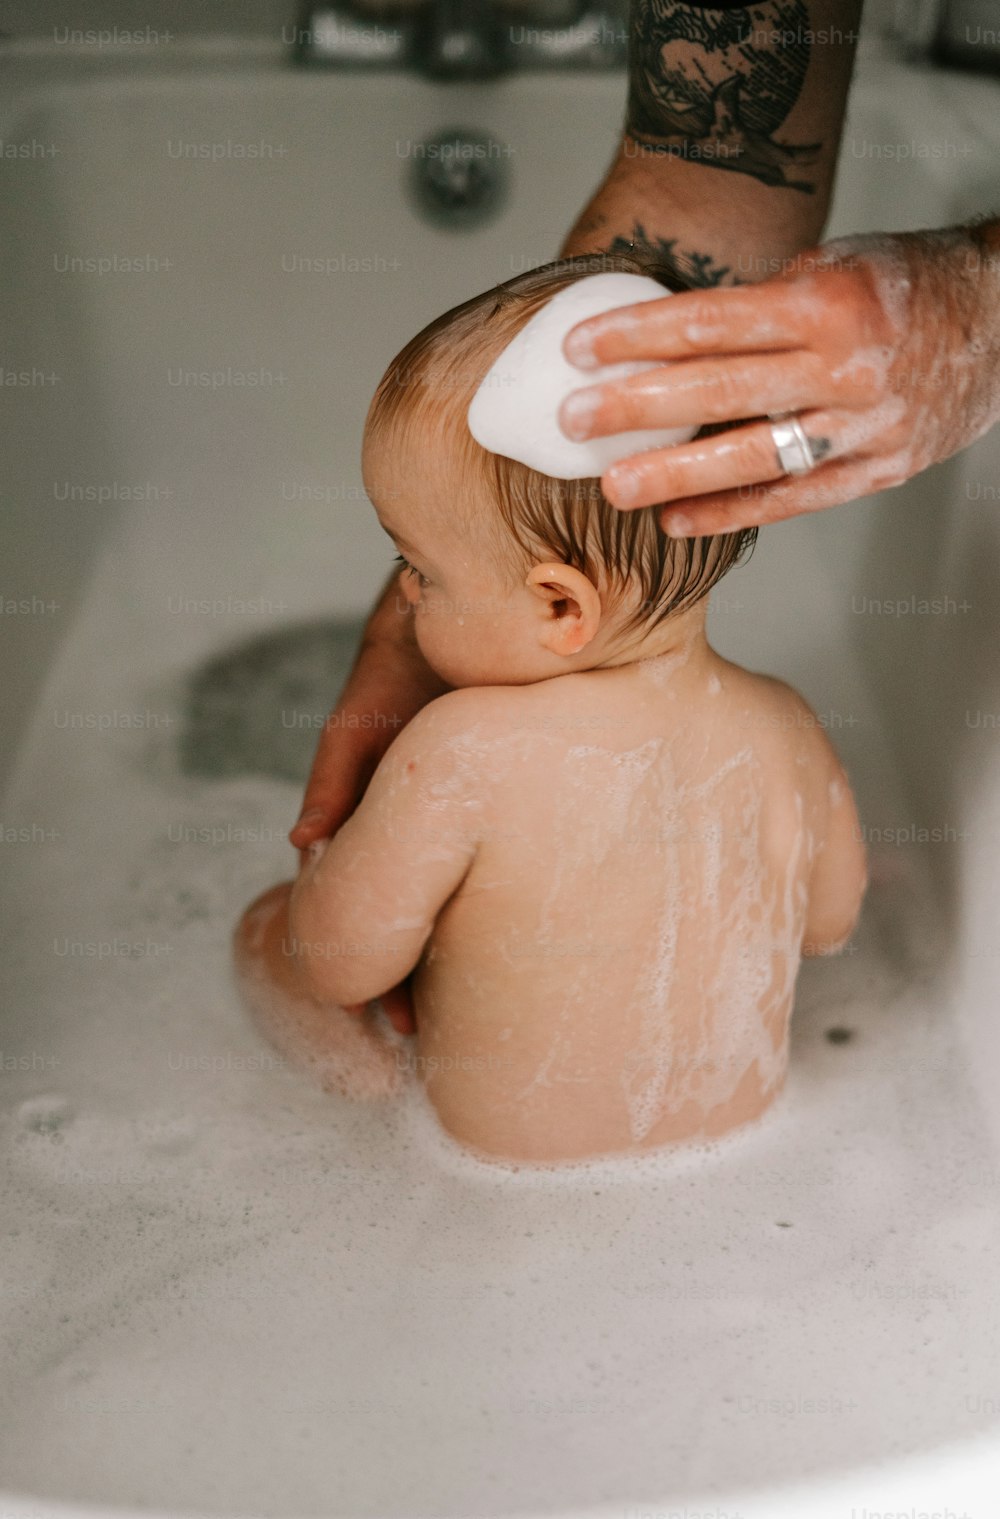 a baby sitting in a bathtub being bathed